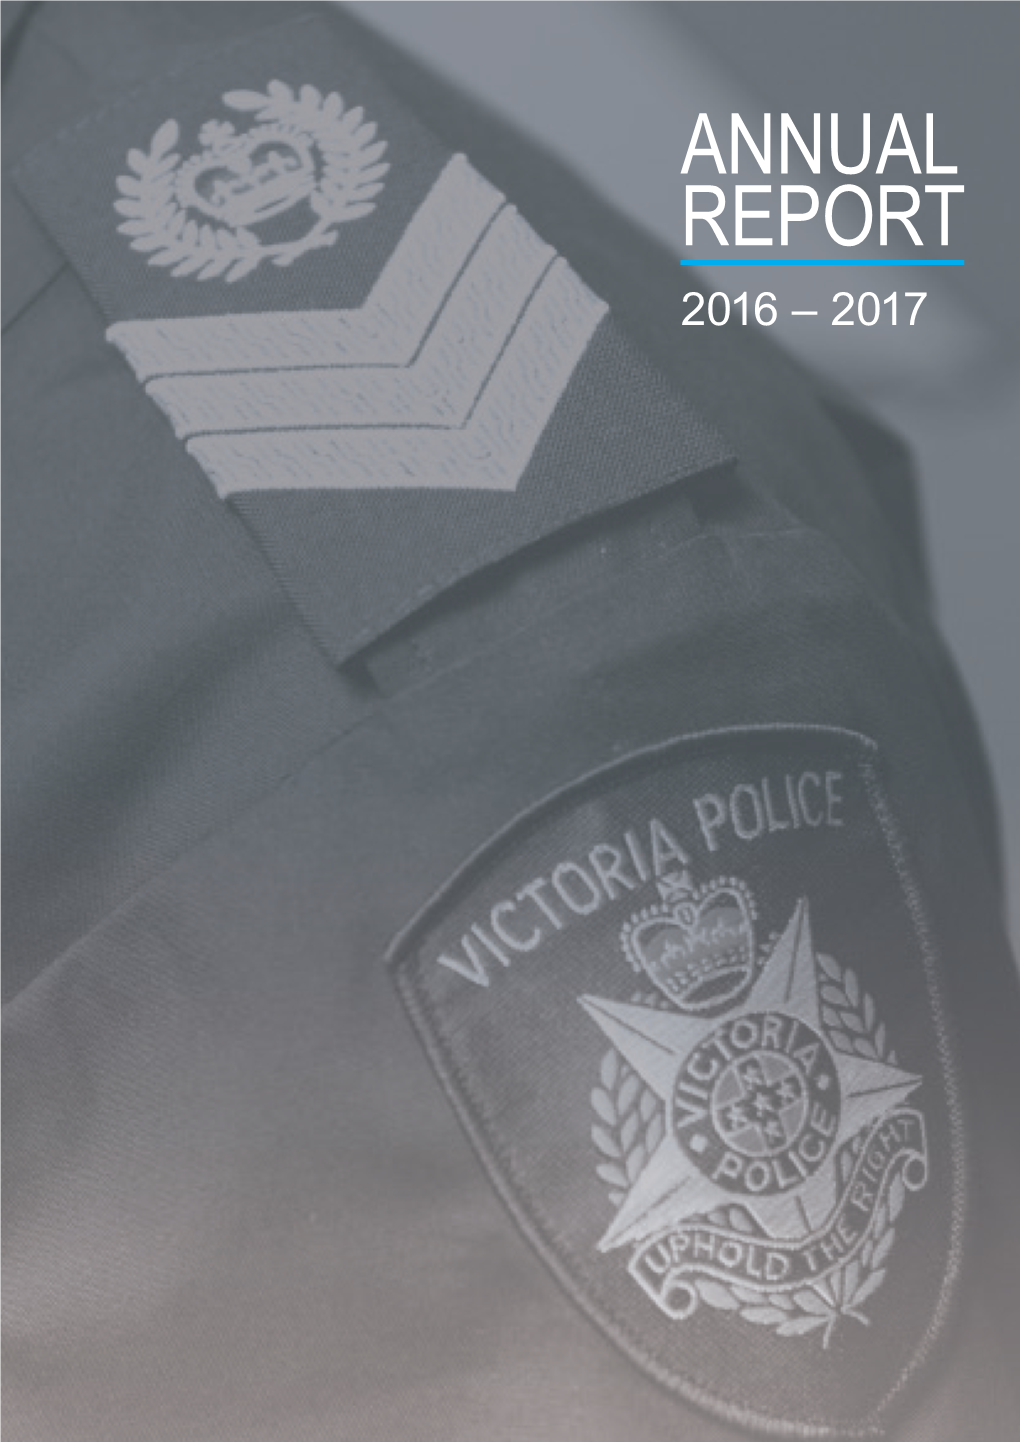 Victoria Police Annual Report 2016-17 Pdf 1.67 MB